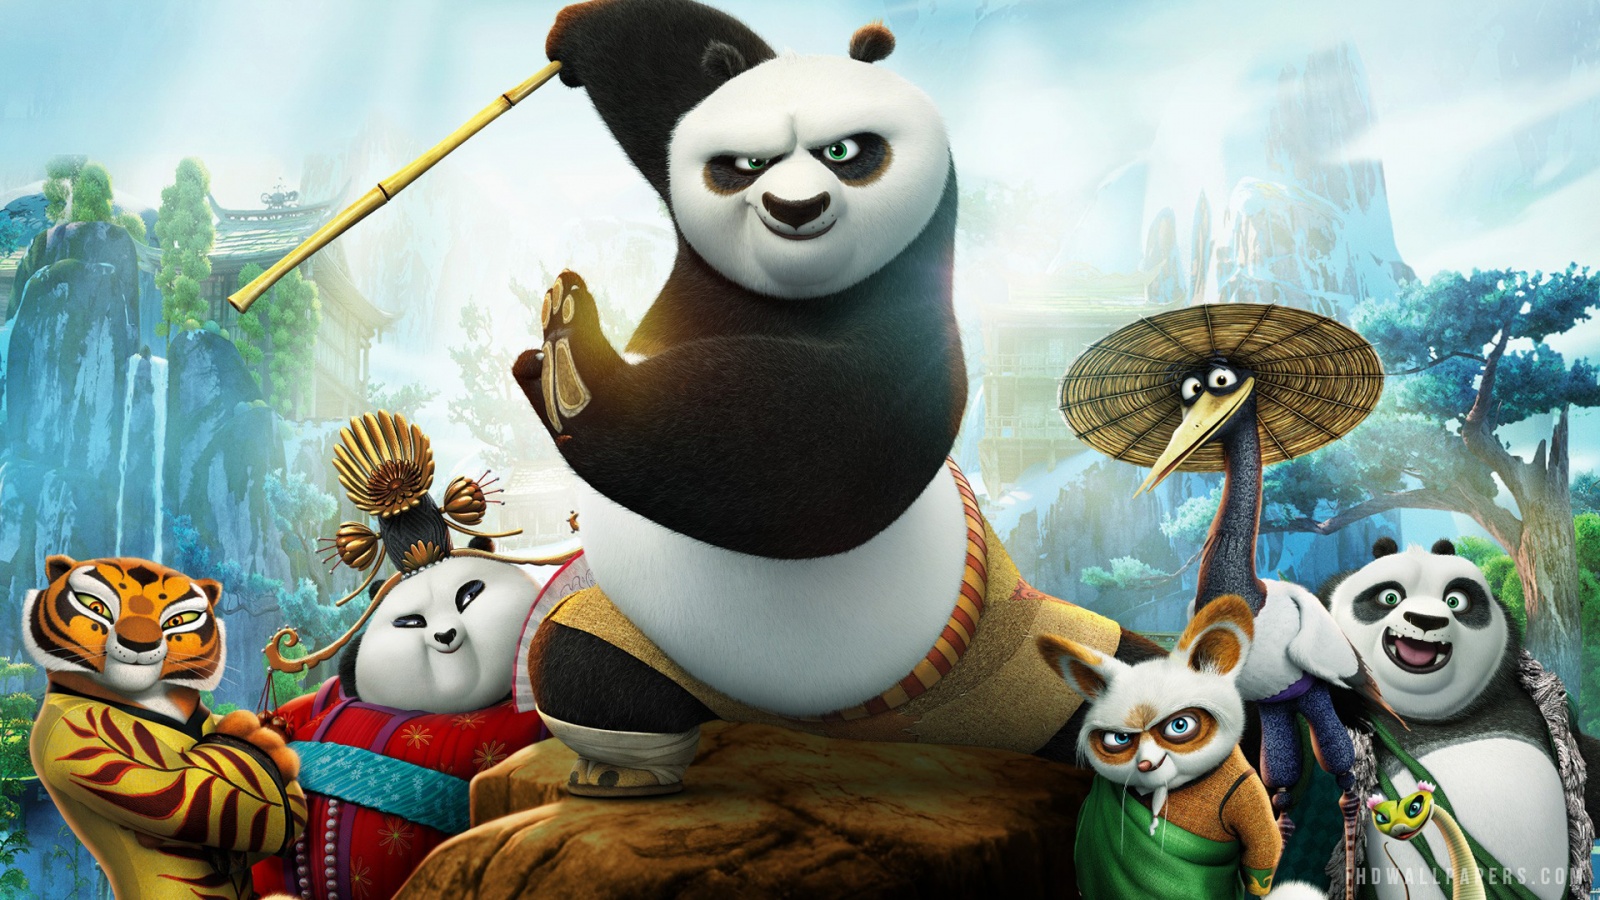 Bộ phim hoạt hình Kung Fu Panda 3 đã trở lại cùng những hình nền độc đáo và đẹp mắt. Hãy cùng khám phá những hình ảnh tuyệt vời với Po và các bạn để tận hưởng không khí sảng khoái và phấn khích. Đừng bỏ lỡ khả năng tải hình nền Kung Fu Panda 3 ngay bây giờ!